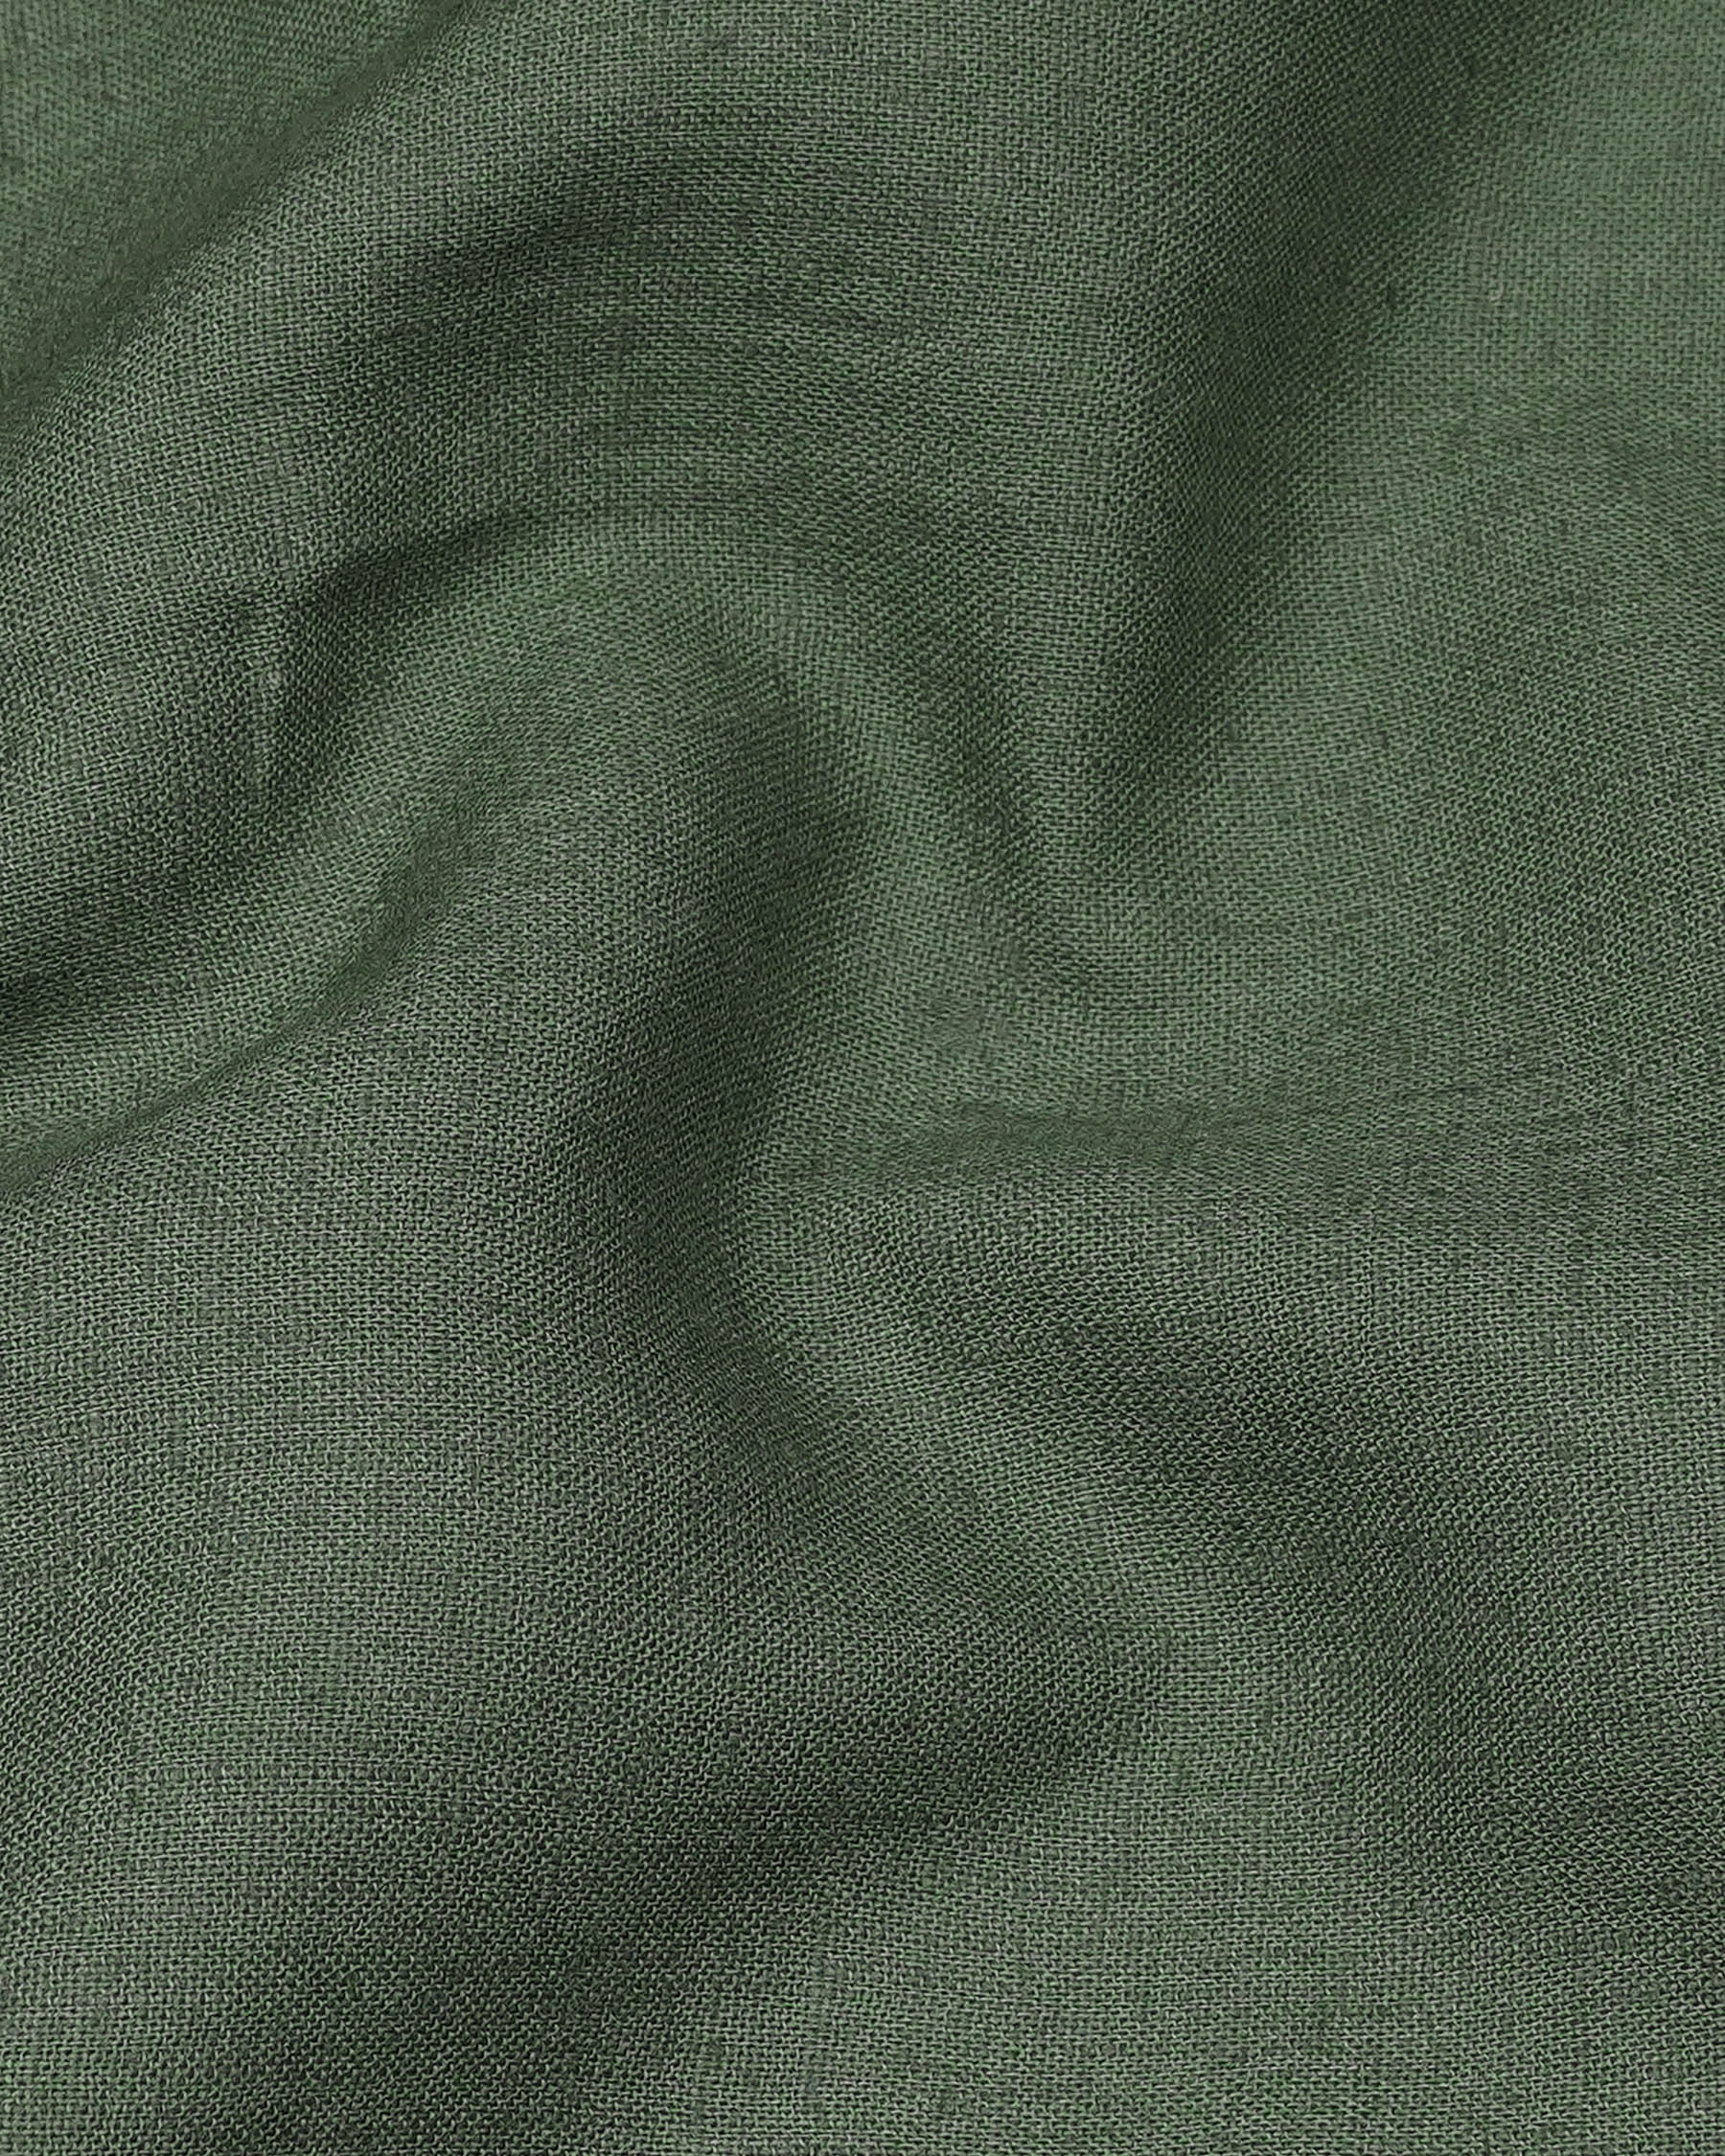 Finch Green Luxurious Linen Shirt 7897-BLK-38, 7897-BLK-H-38, 7897-BLK-39, 7897-BLK-H-39, 7897-BLK-40, 7897-BLK-H-40, 7897-BLK-42, 7897-BLK-H-42, 7897-BLK-44, 7897-BLK-H-44, 7897-BLK-46, 7897-BLK-H-46, 7897-BLK-48, 7897-BLK-H-48, 7897-BLK-50, 7897-BLK-H-50, 7897-BLK-52, 7897-BLK-H-52